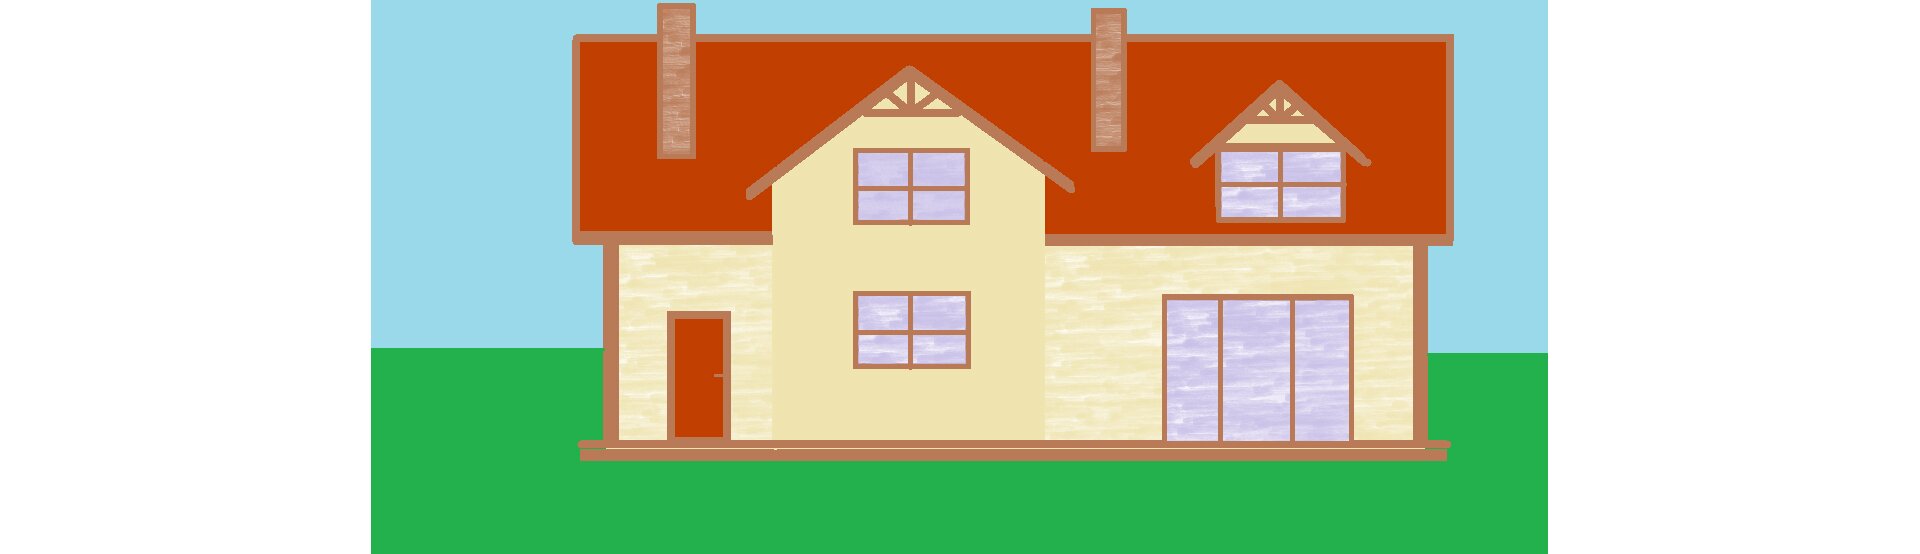 Ilustracja przedstawia dom utworzony z figur geometrycznych. Wszystkie linie są proste, dom posiada jedne drzwi wejściowe po lewej stronie, piętro, skośny dach, dwa kominy, duże szklane drzwi tarasowe po prawej stronie, dwa prostokątne okna na piętrze pod skośnymi daszkami, jedno prostokątne okno na parterze. 